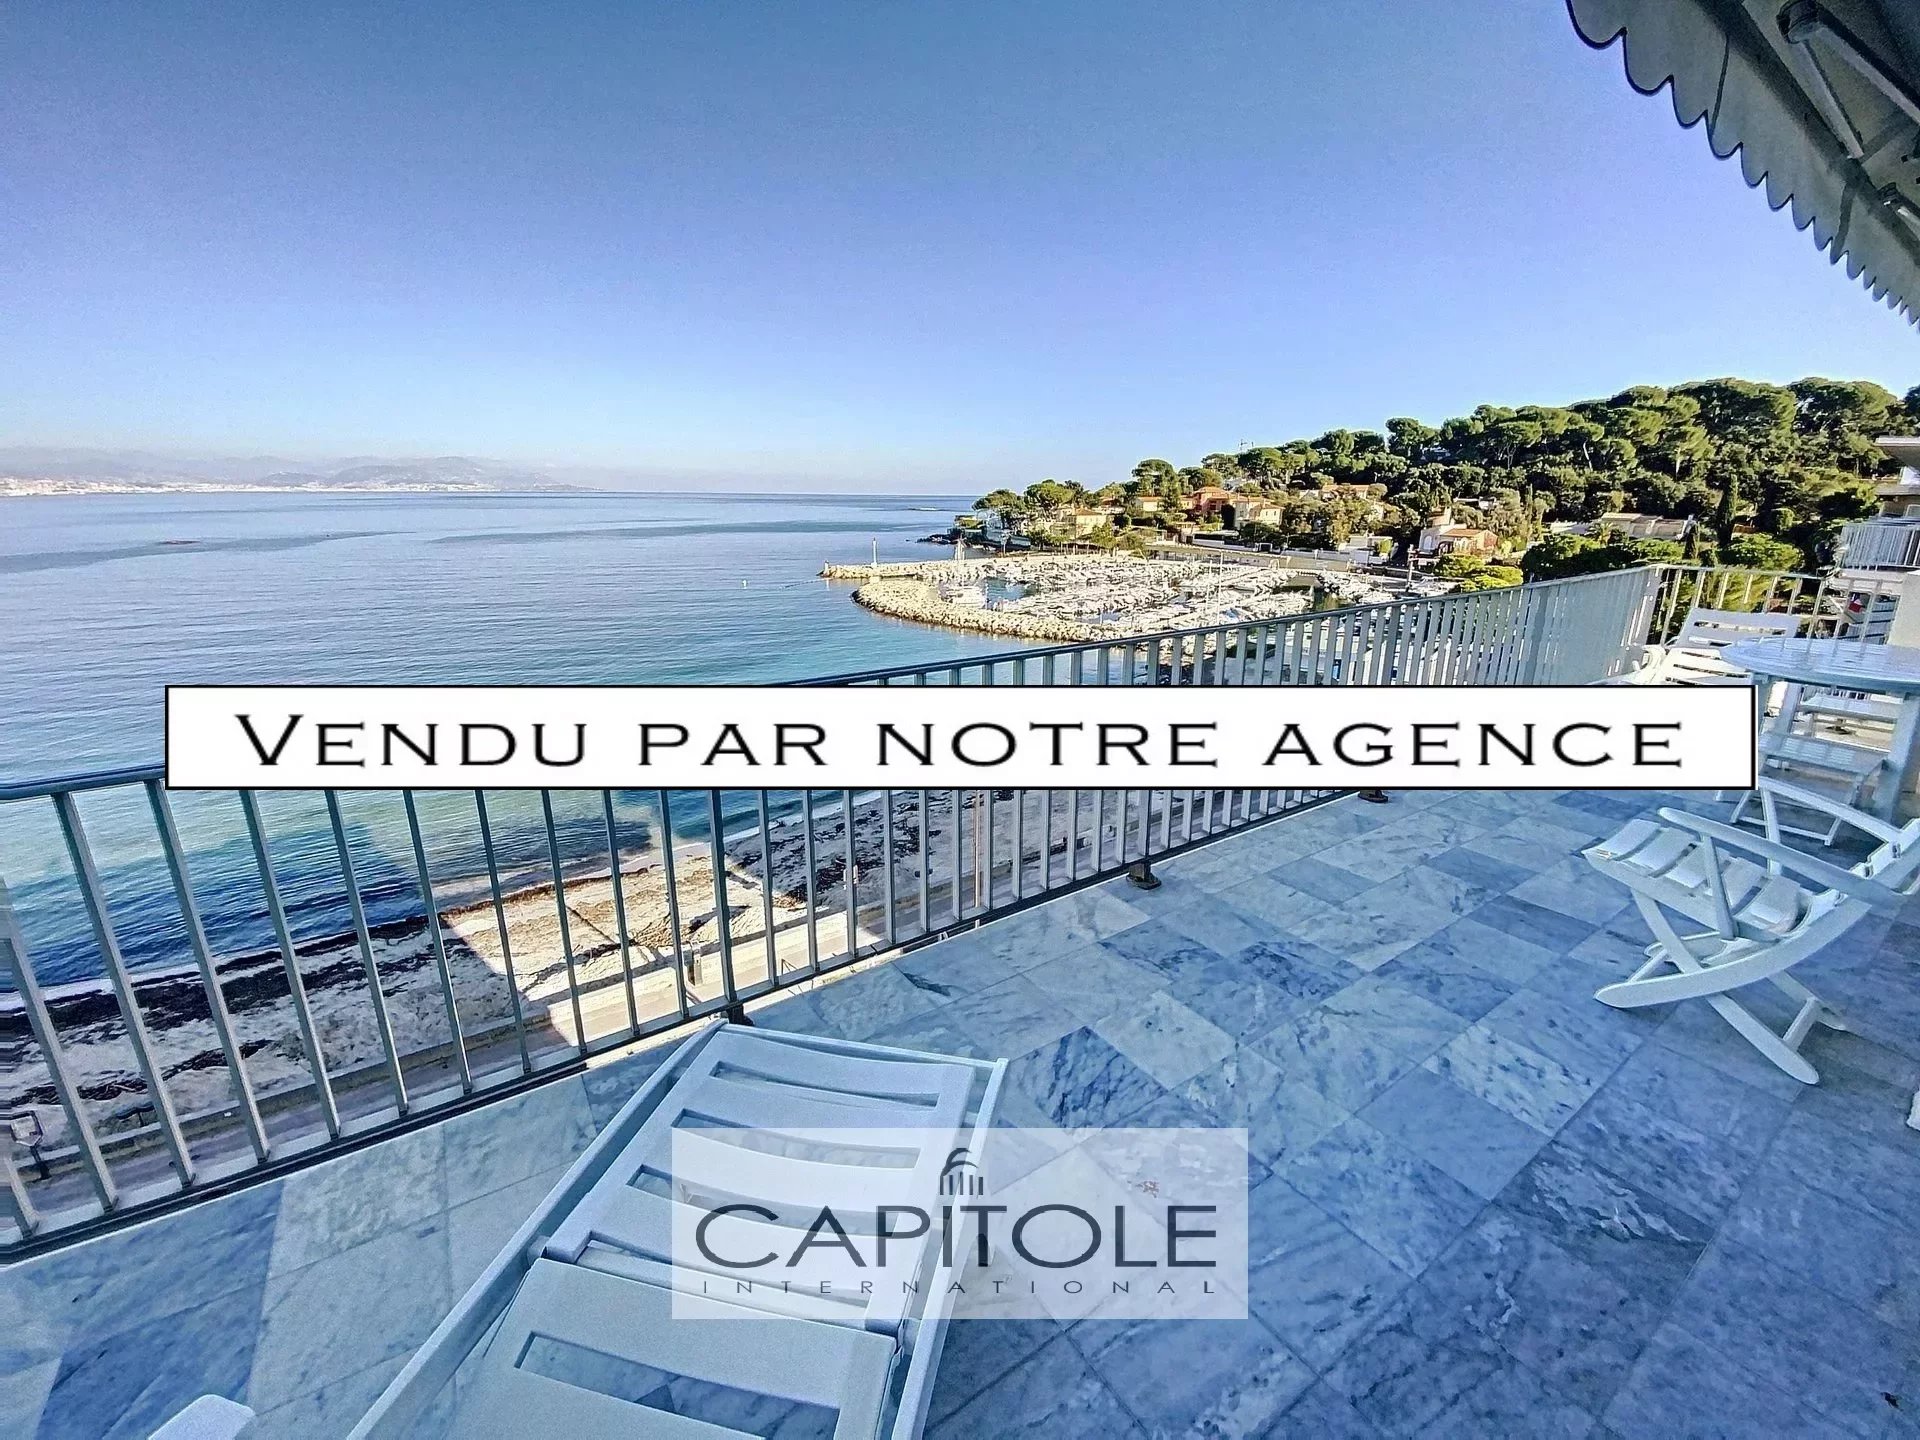 A vendre, Antibes Salis, magnifique appartement 3 pièces 95 m², dernier étage, vue mer panoramique, 2 parkings, cave